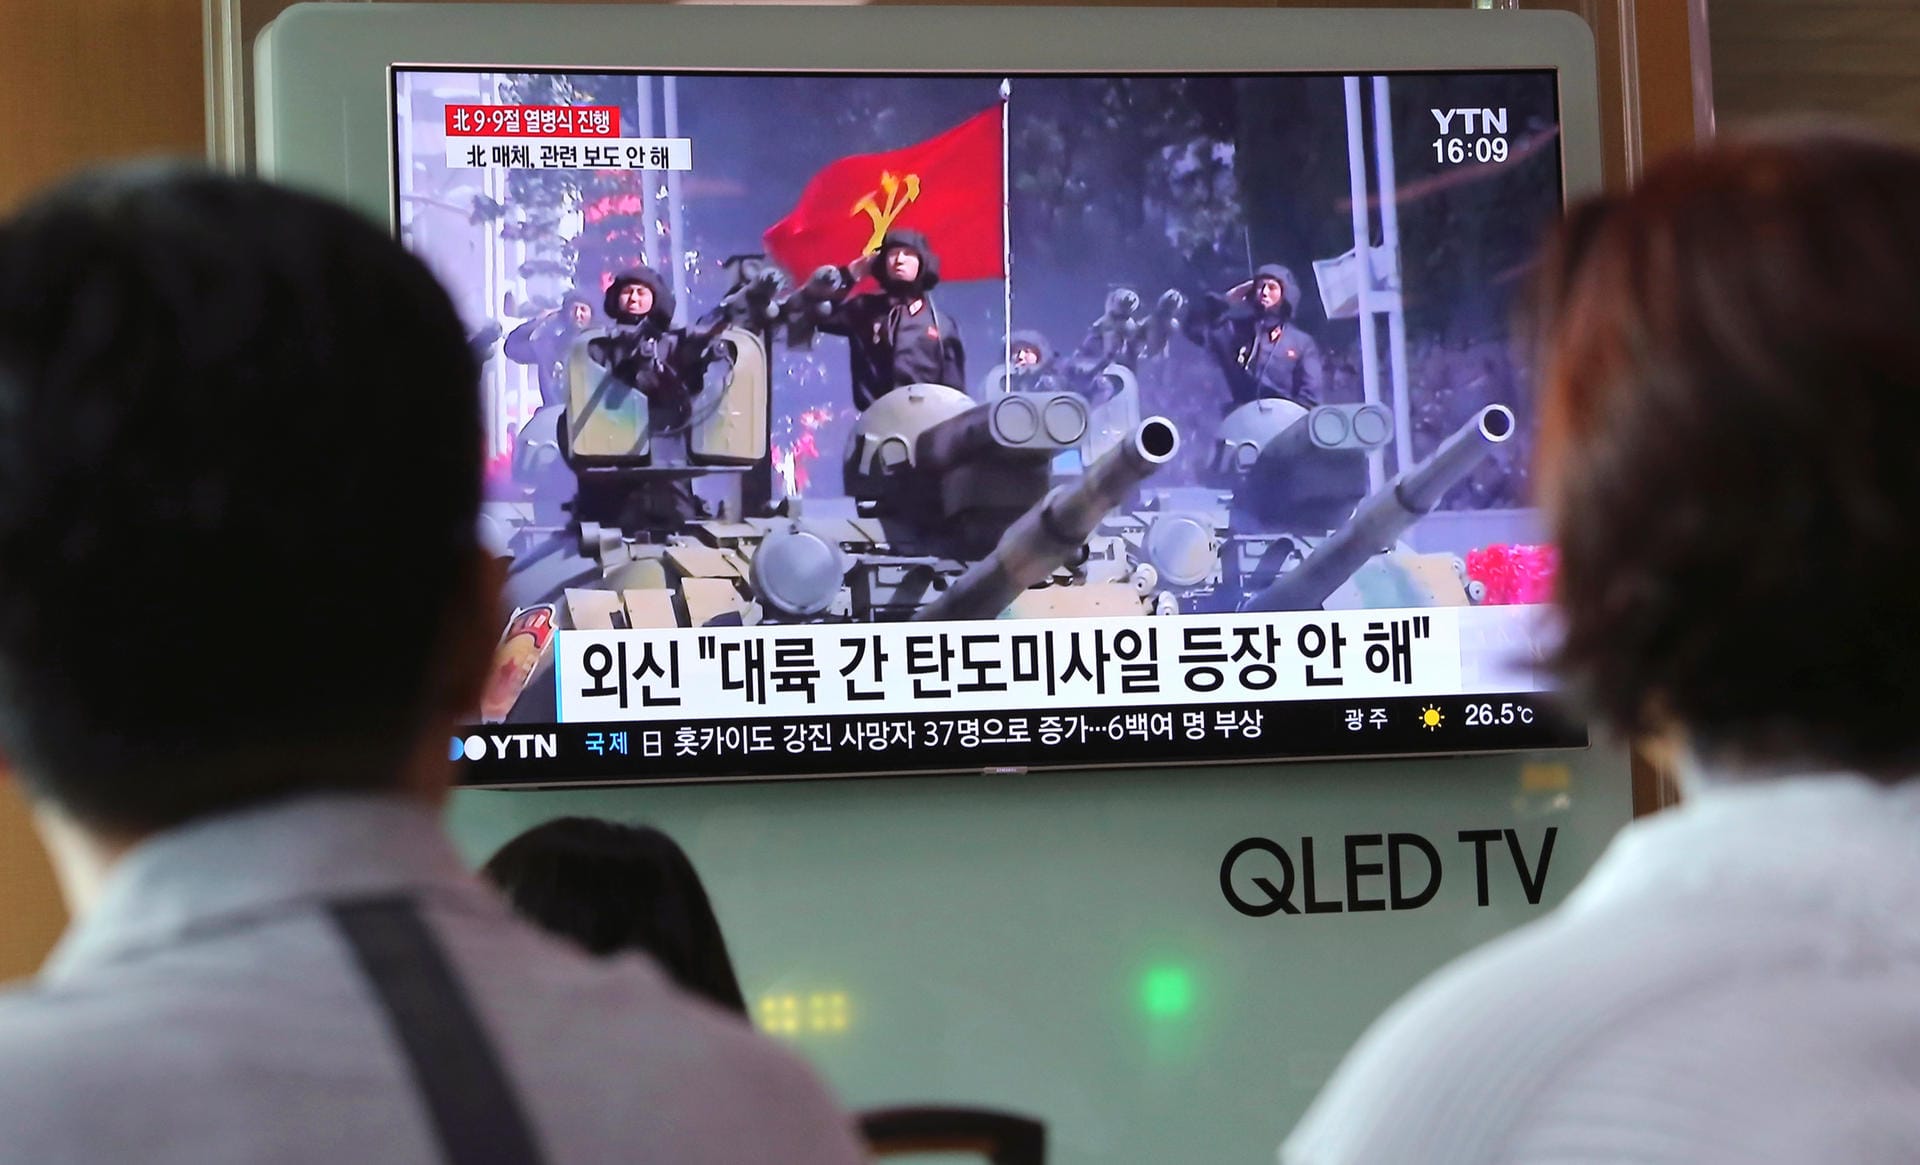 Südkoreaner verfolgen nordkoreanische Militärparde auf TV-Monitor